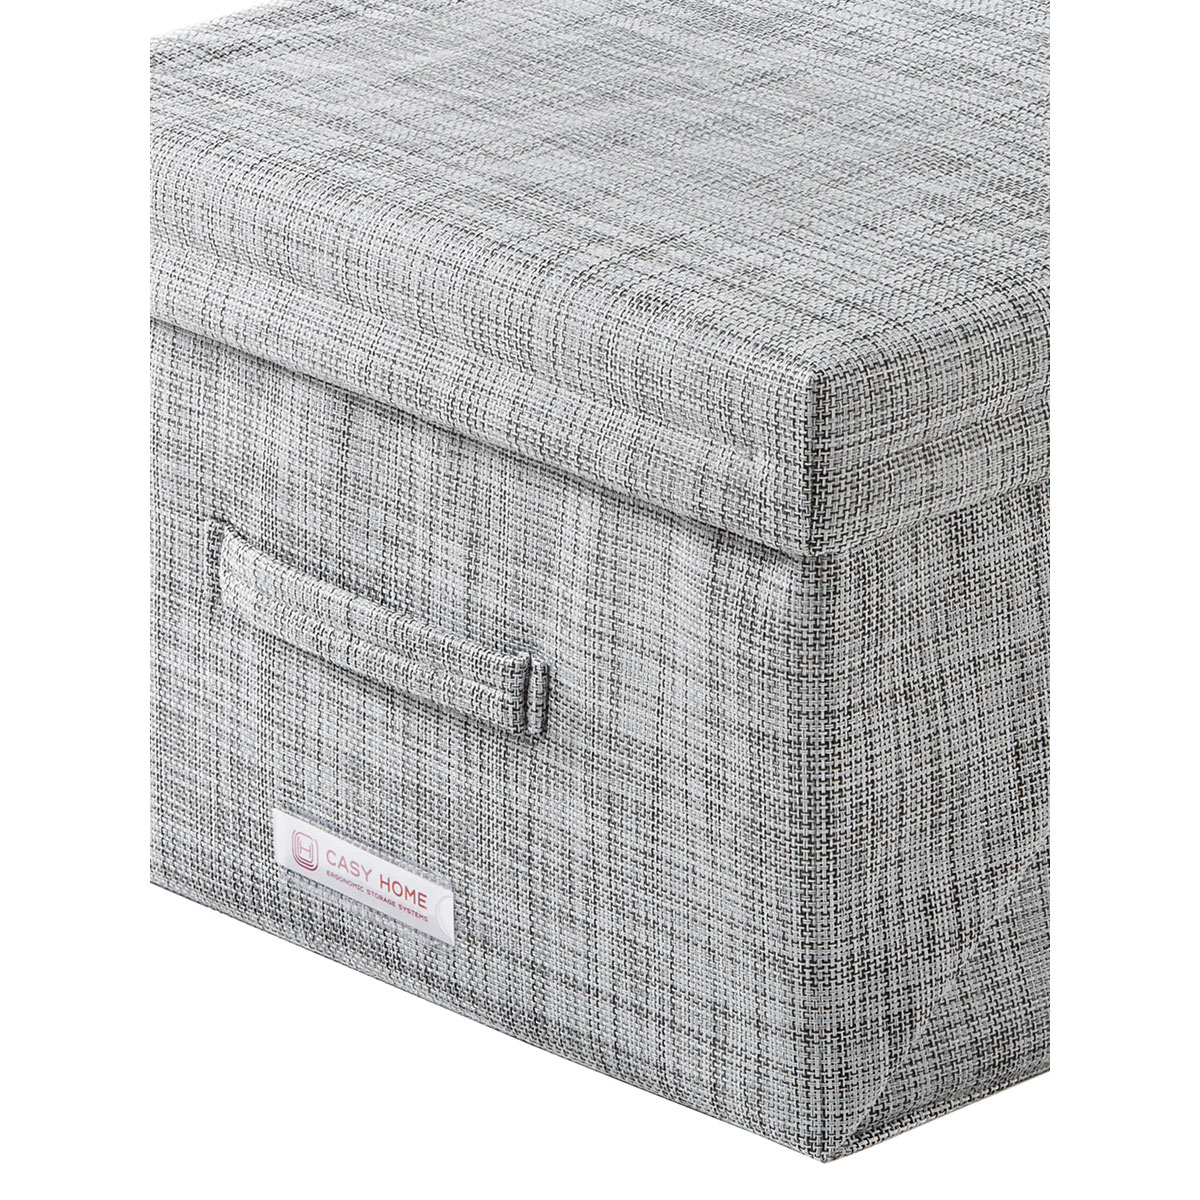 Короб с крышкой Casy Home For Professionals 50x44x28см, серебряный Casy Home PB-012, цвет серый - фото 5